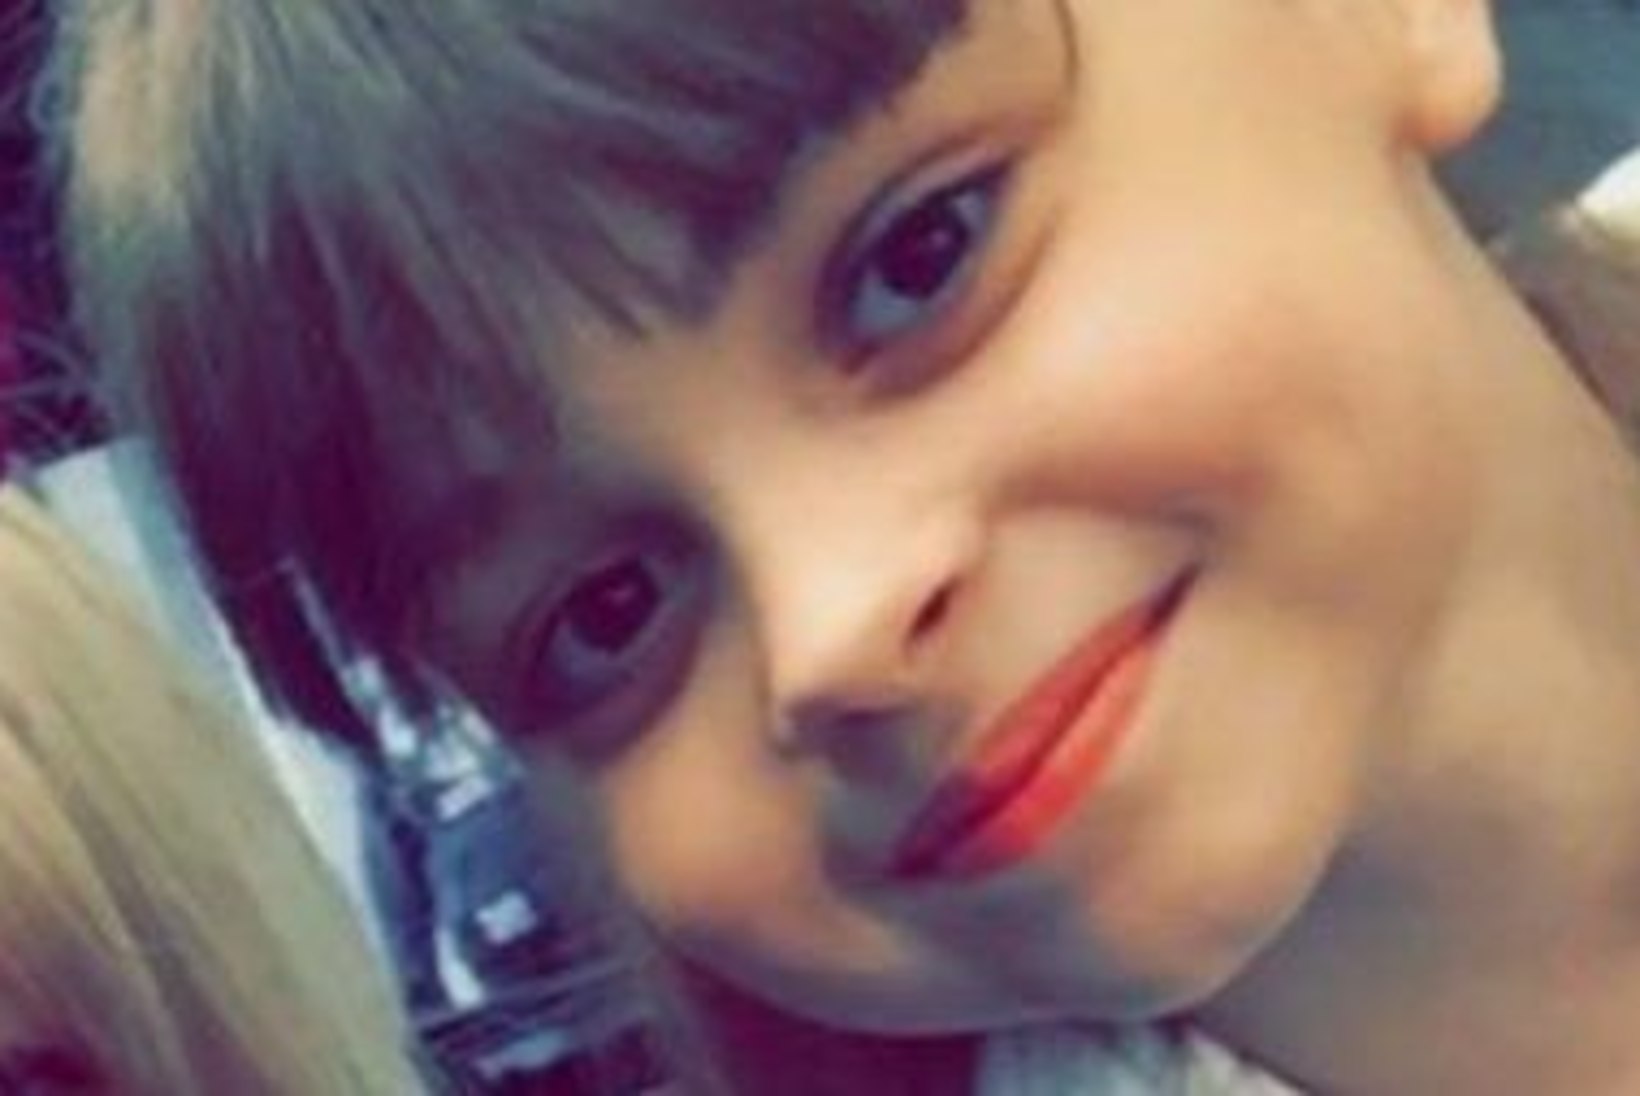 Teine Manchesteri terrorirünnaku avalikustatud ohver on 8aastane tüdruk